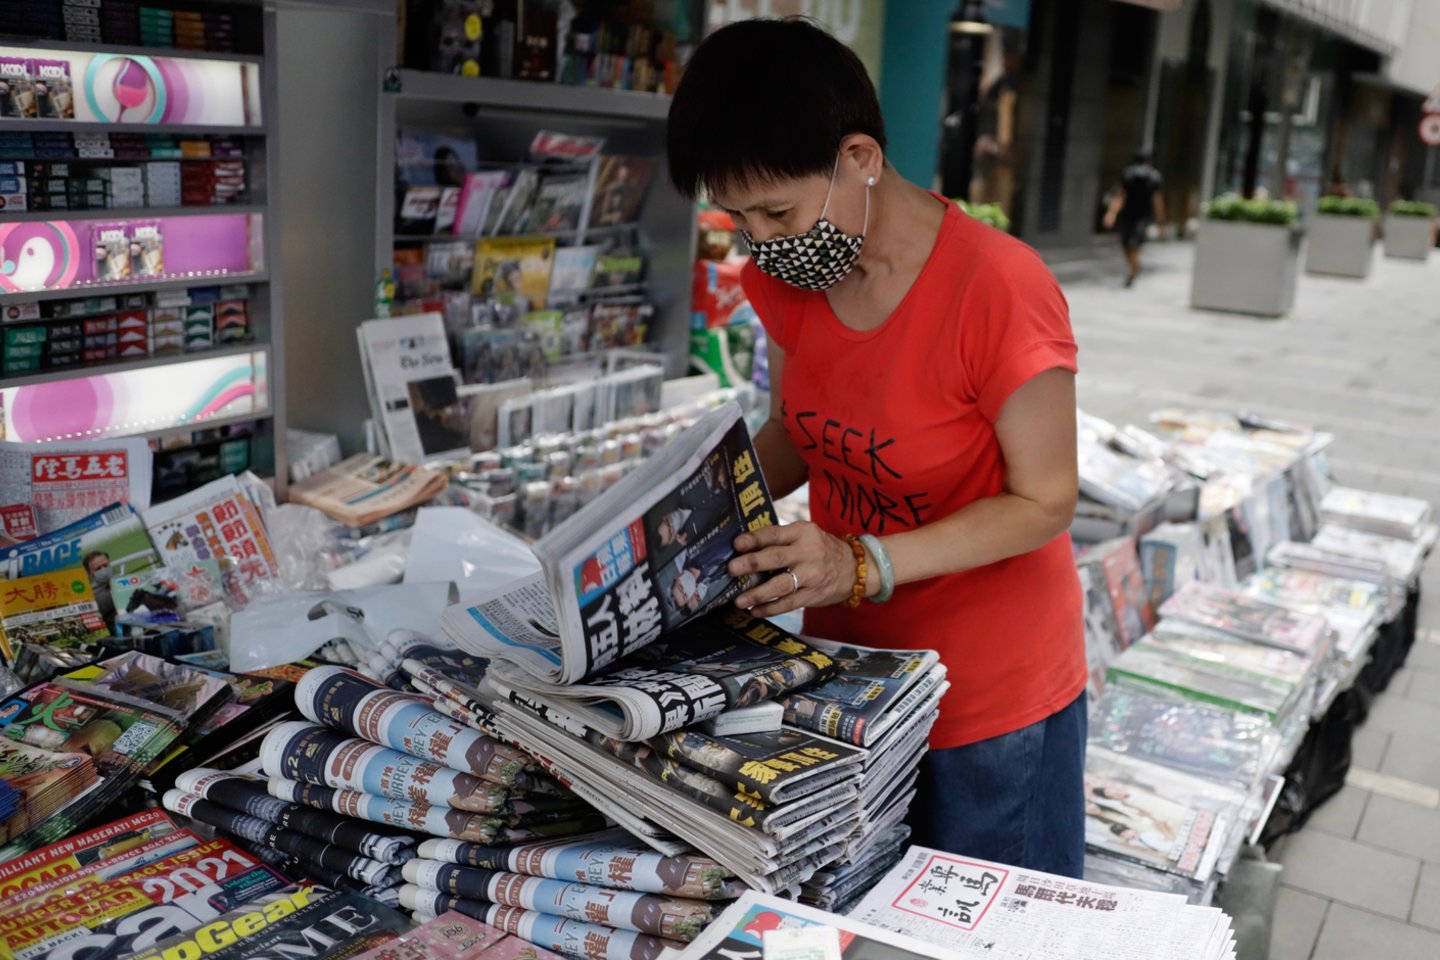  Honkongo laikraštis po policijos reido išėjo 6 kartus didesniu tiražu.  <br> Liau Chung-ren/ZUMA Wire/Scanpix nuotr.